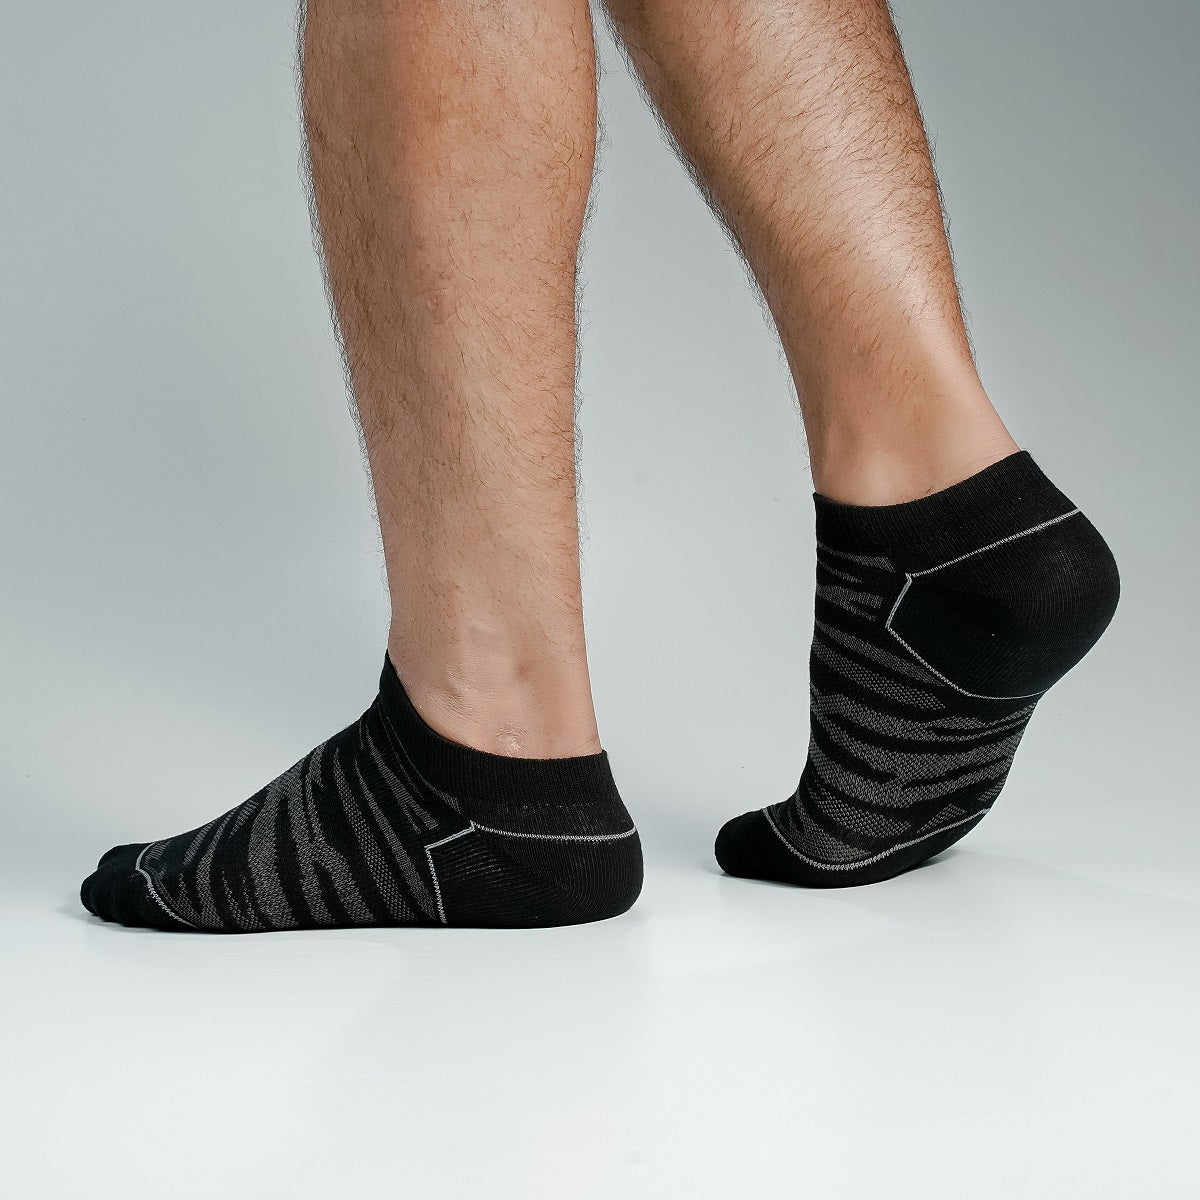 Kmalion Ankle socks for Men By MB Hosiery